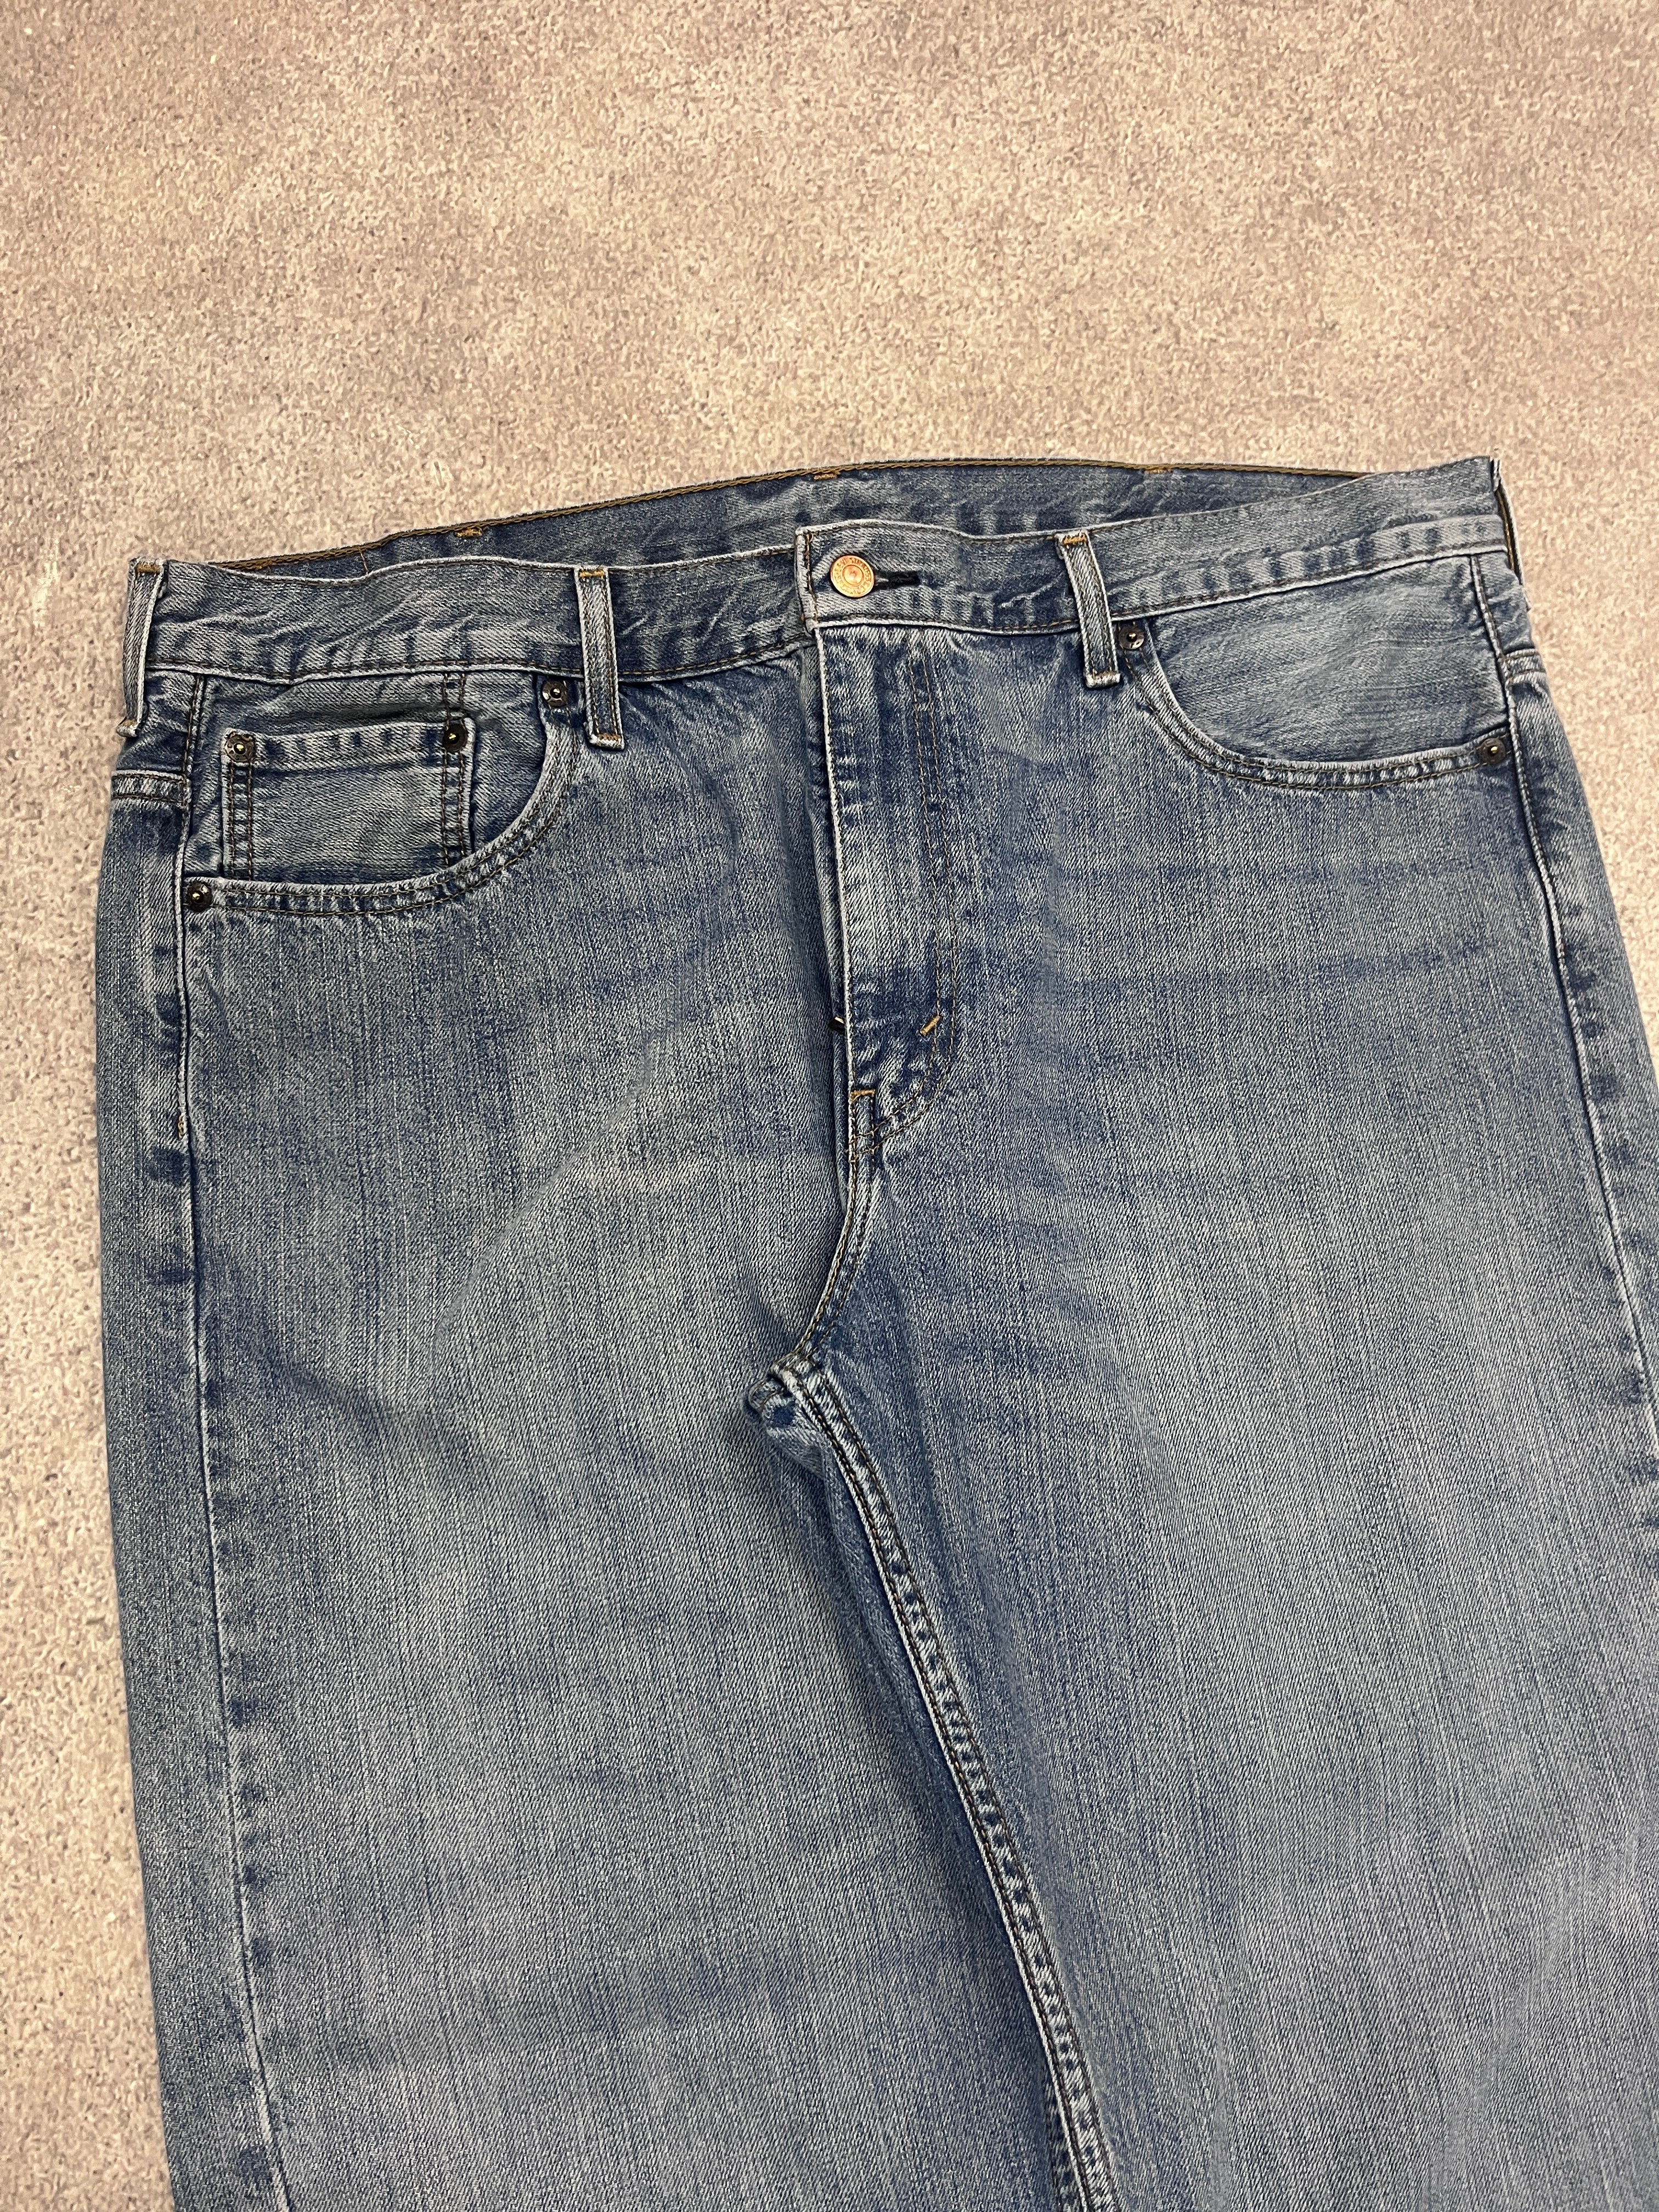 Vintage Levi 569 Denim Jeans Blue // W38 L34 - RHAGHOUSE VINTAGE